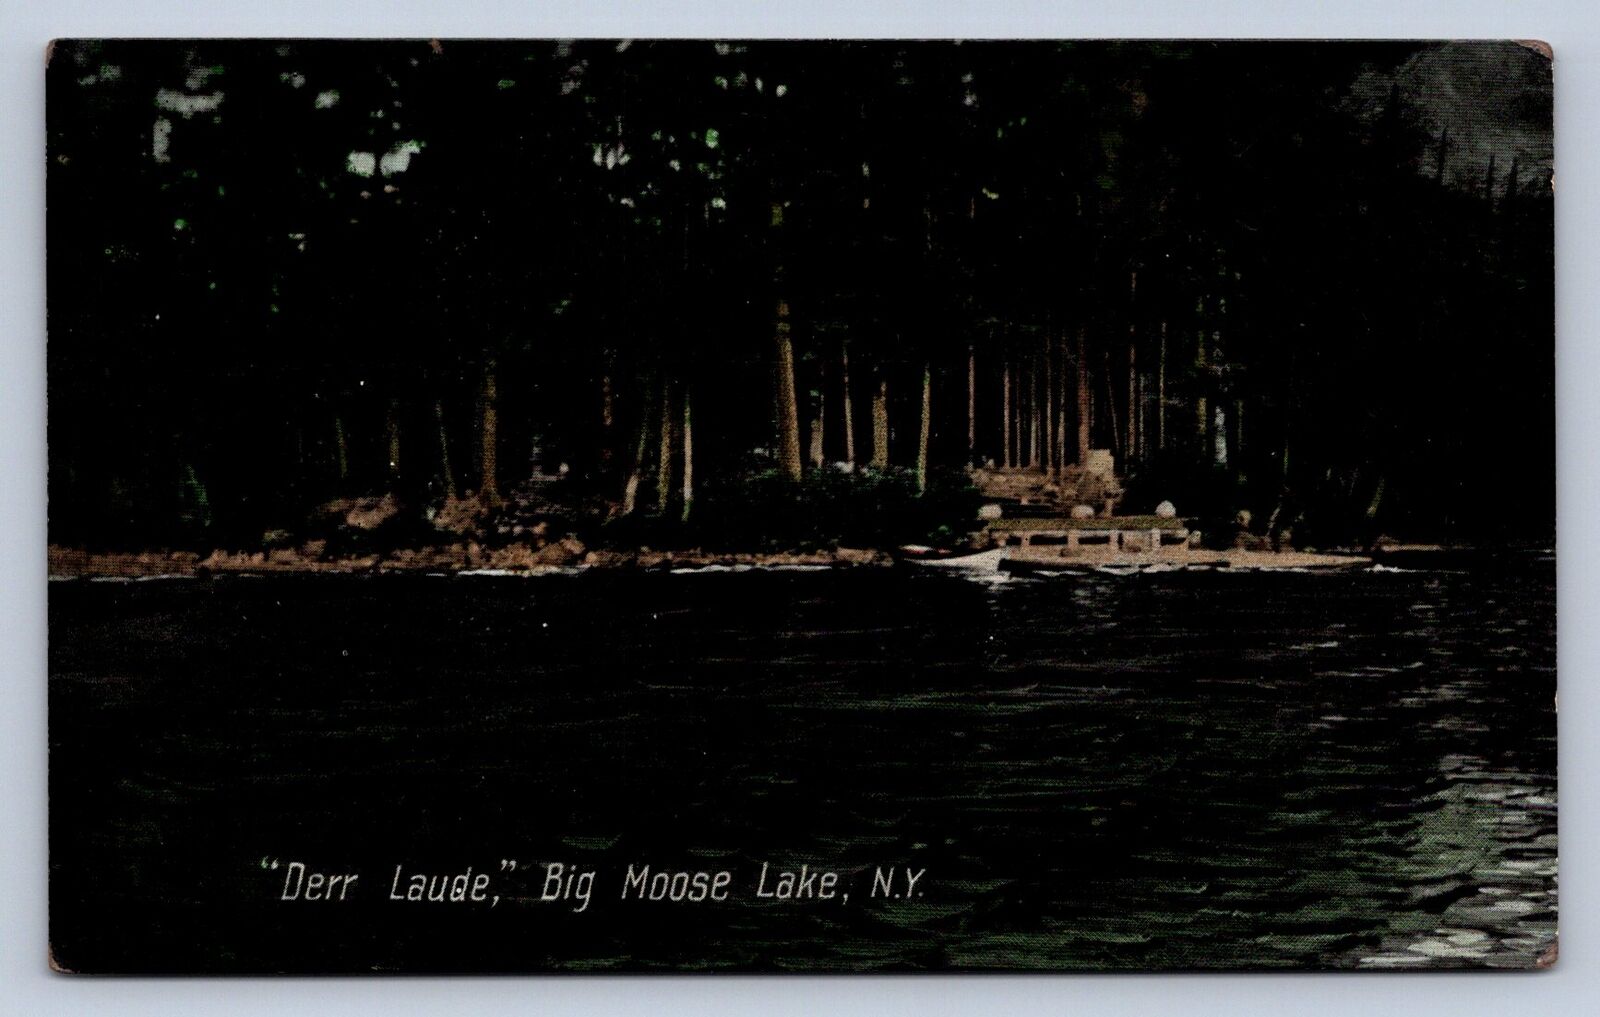 PC1/ Big Moose Lake New York Postcard c10 Adirondacks ADK Derr Laude 534